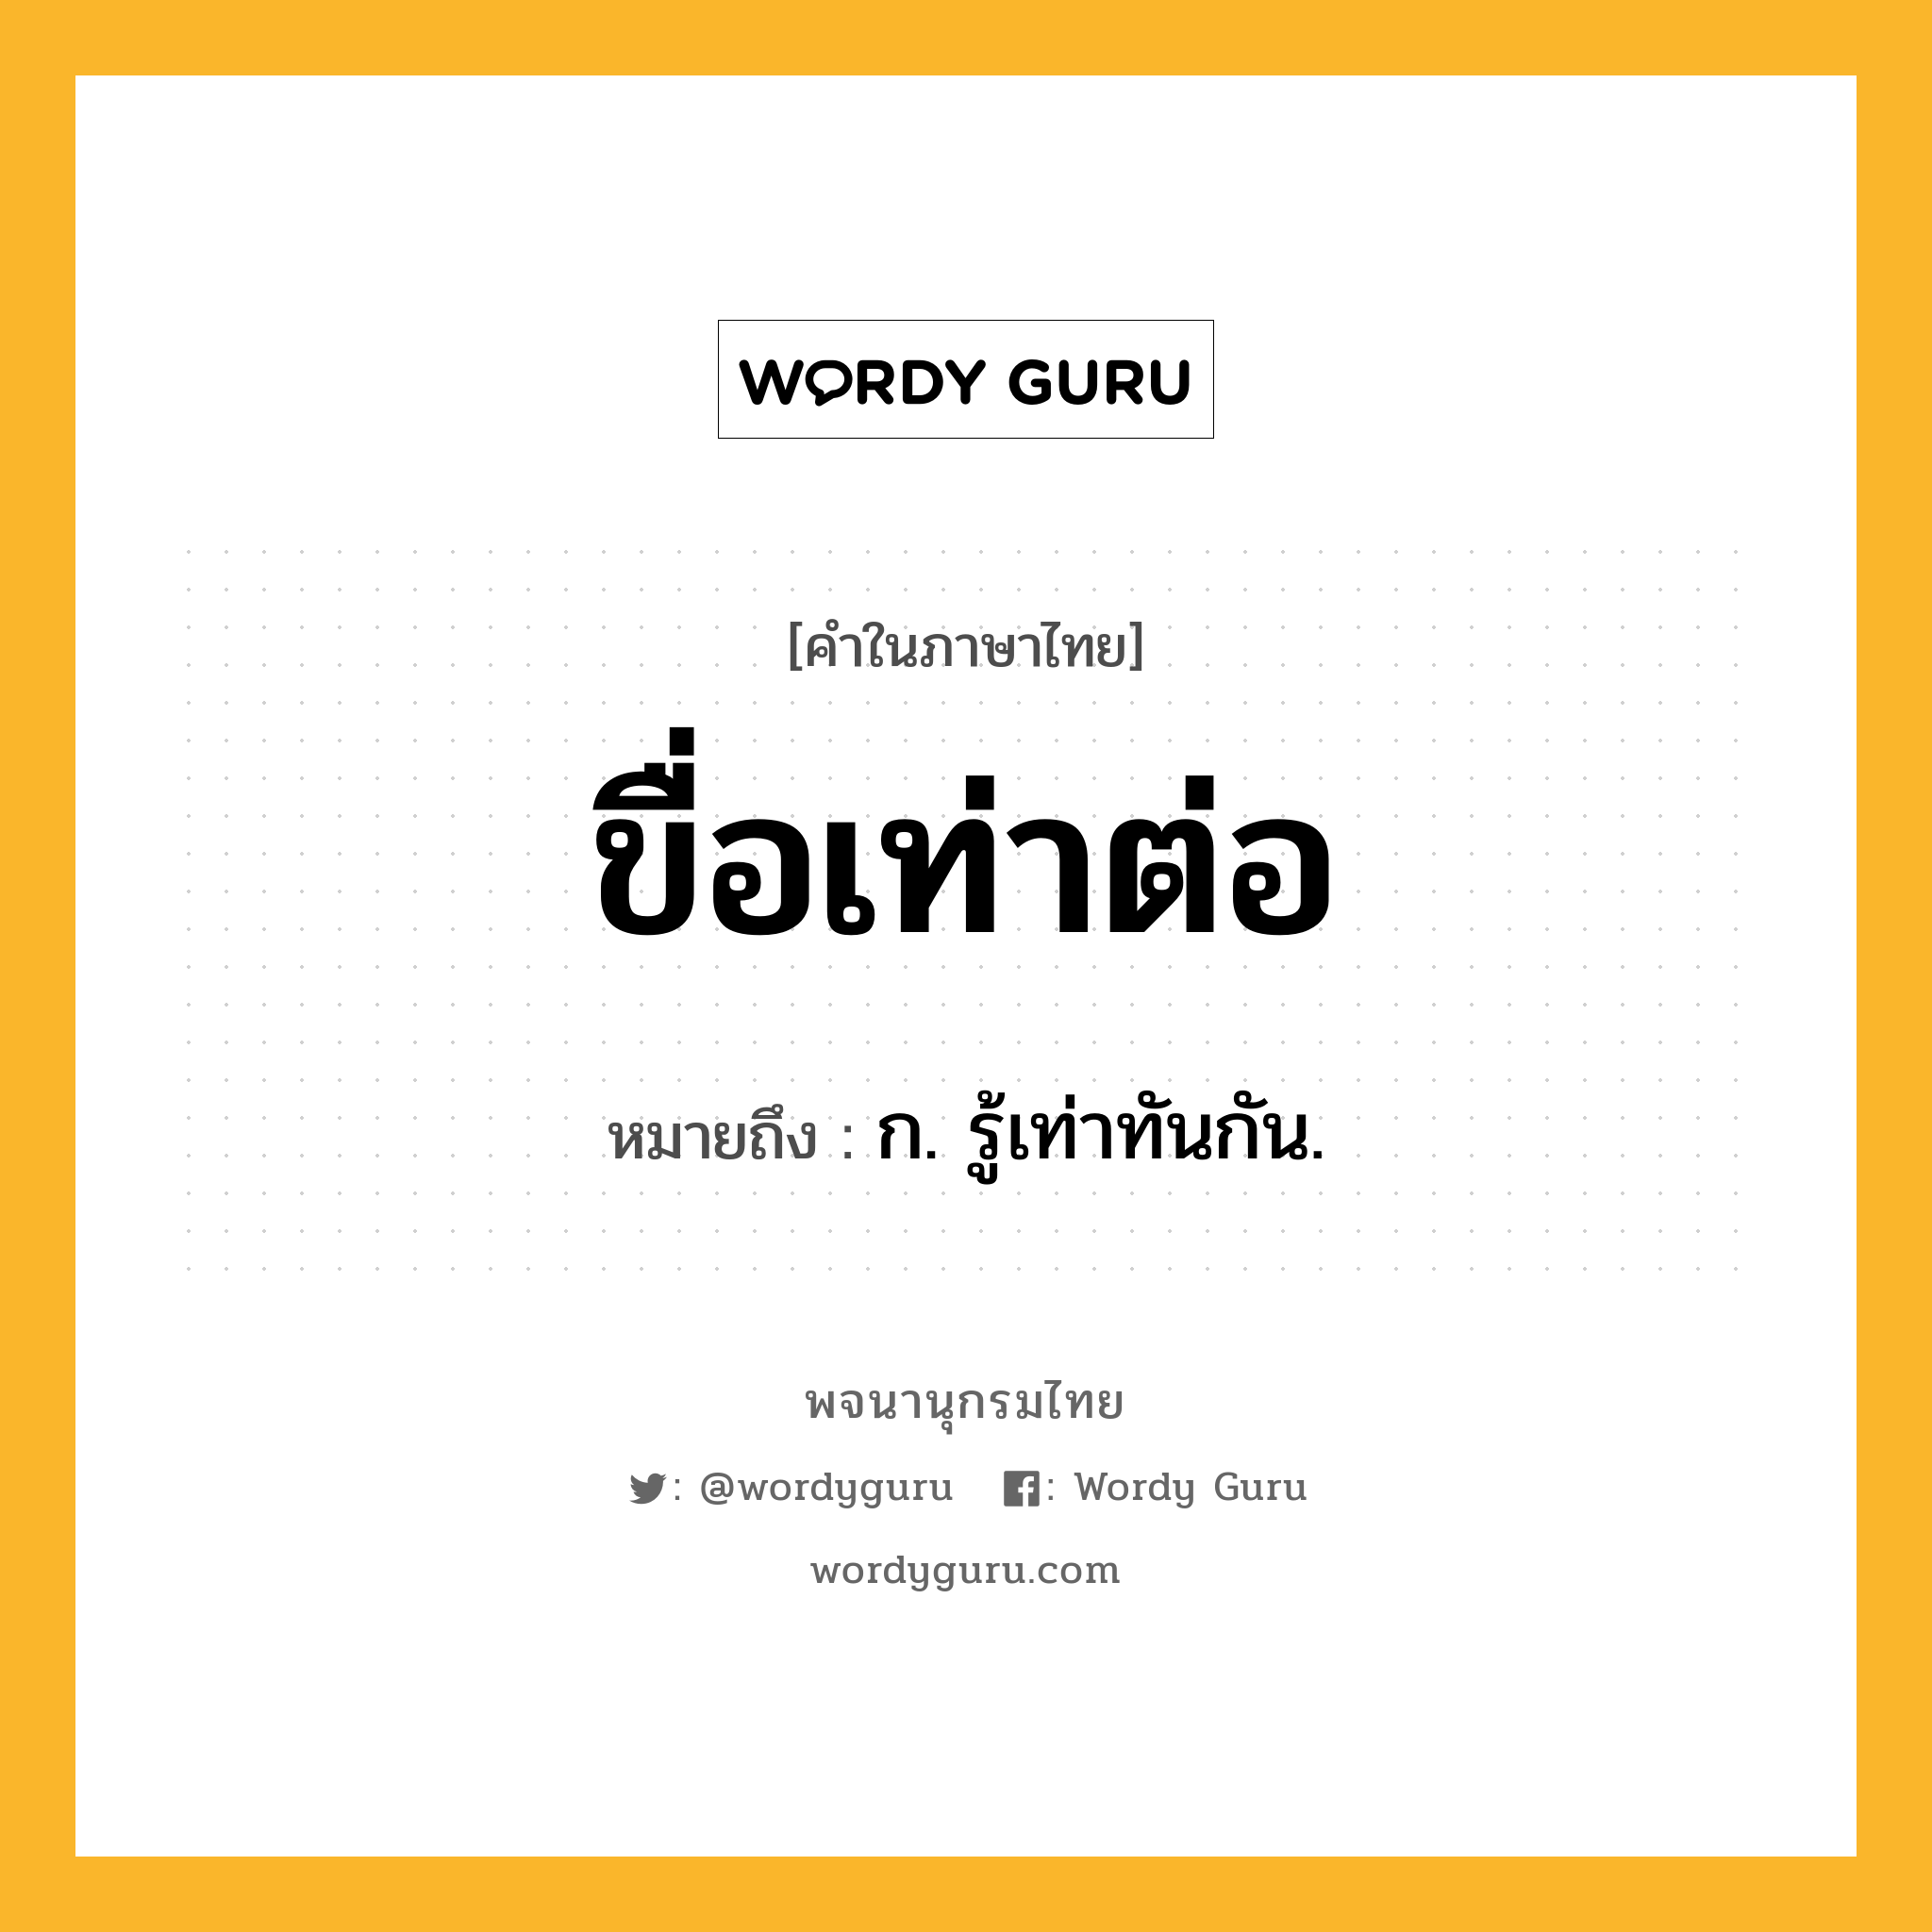 ขื่อเท่าต่อ หมายถึงอะไร?, คำในภาษาไทย ขื่อเท่าต่อ หมายถึง ก. รู้เท่าทันกัน.